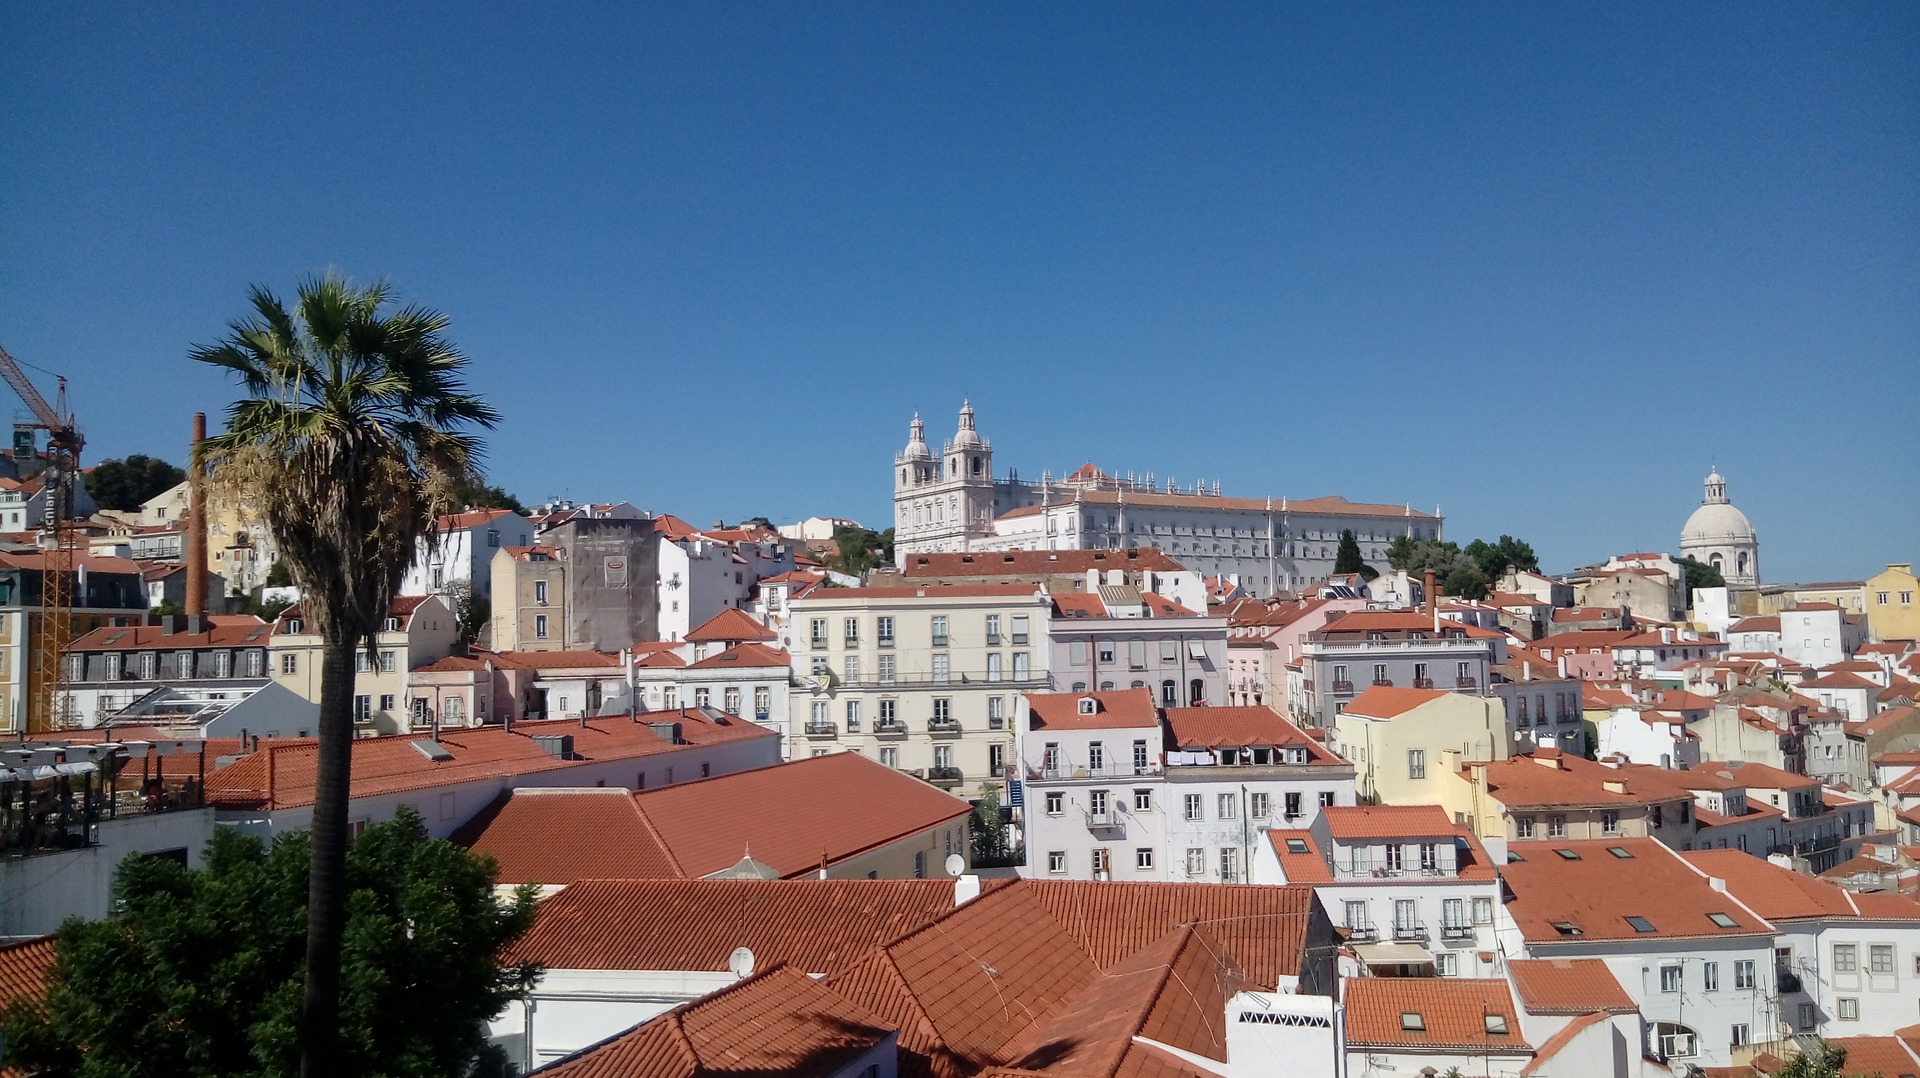 Wakacje w Portugalii – dopuszczalna ilość alkoholu i inne przepisy drogowe